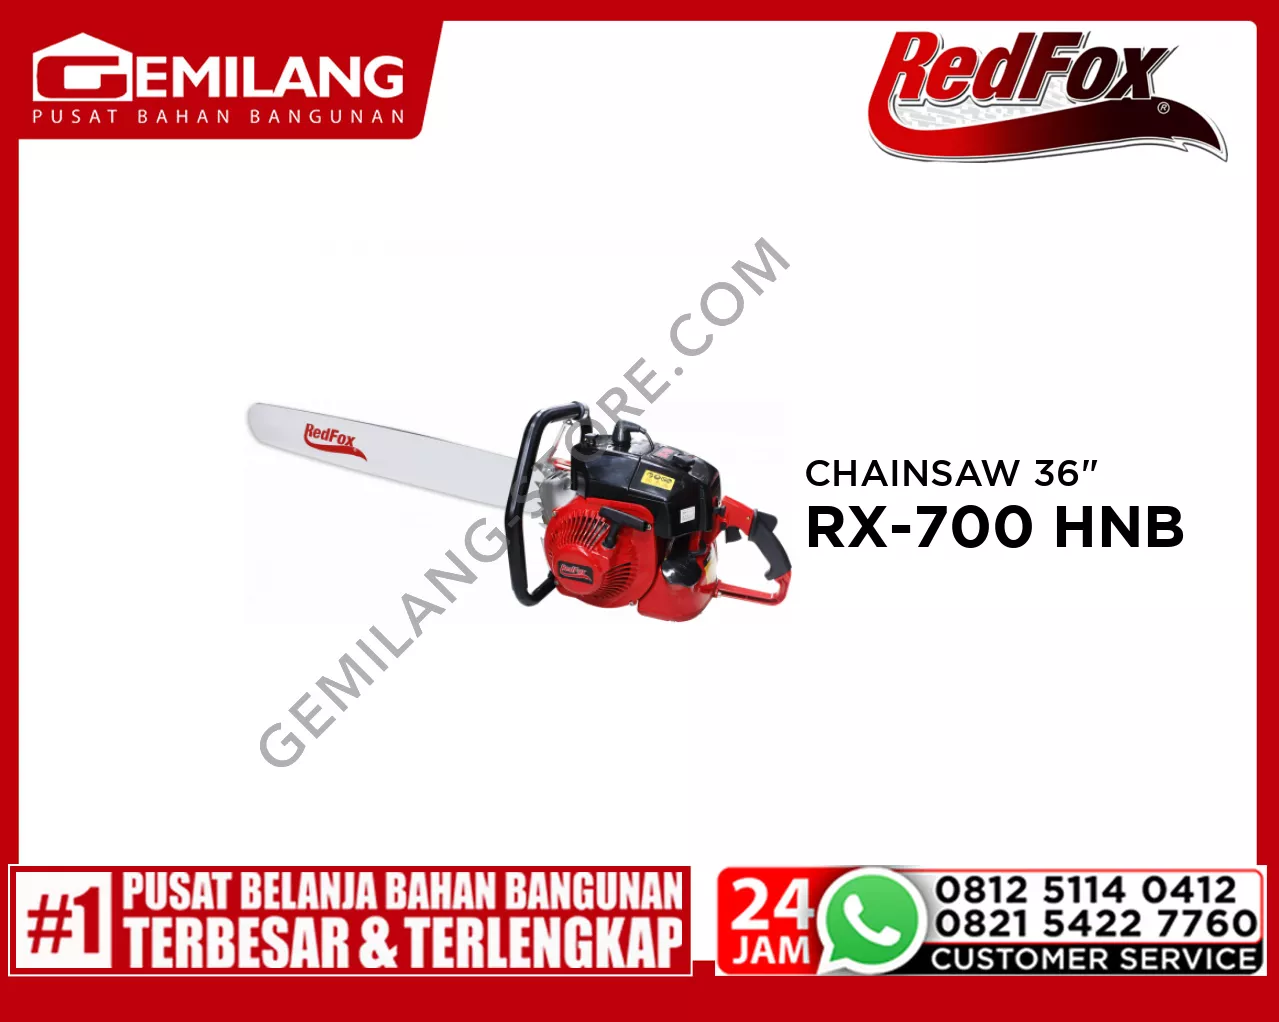 REDFOX CHAINSAW RX-700 HNB 36inch